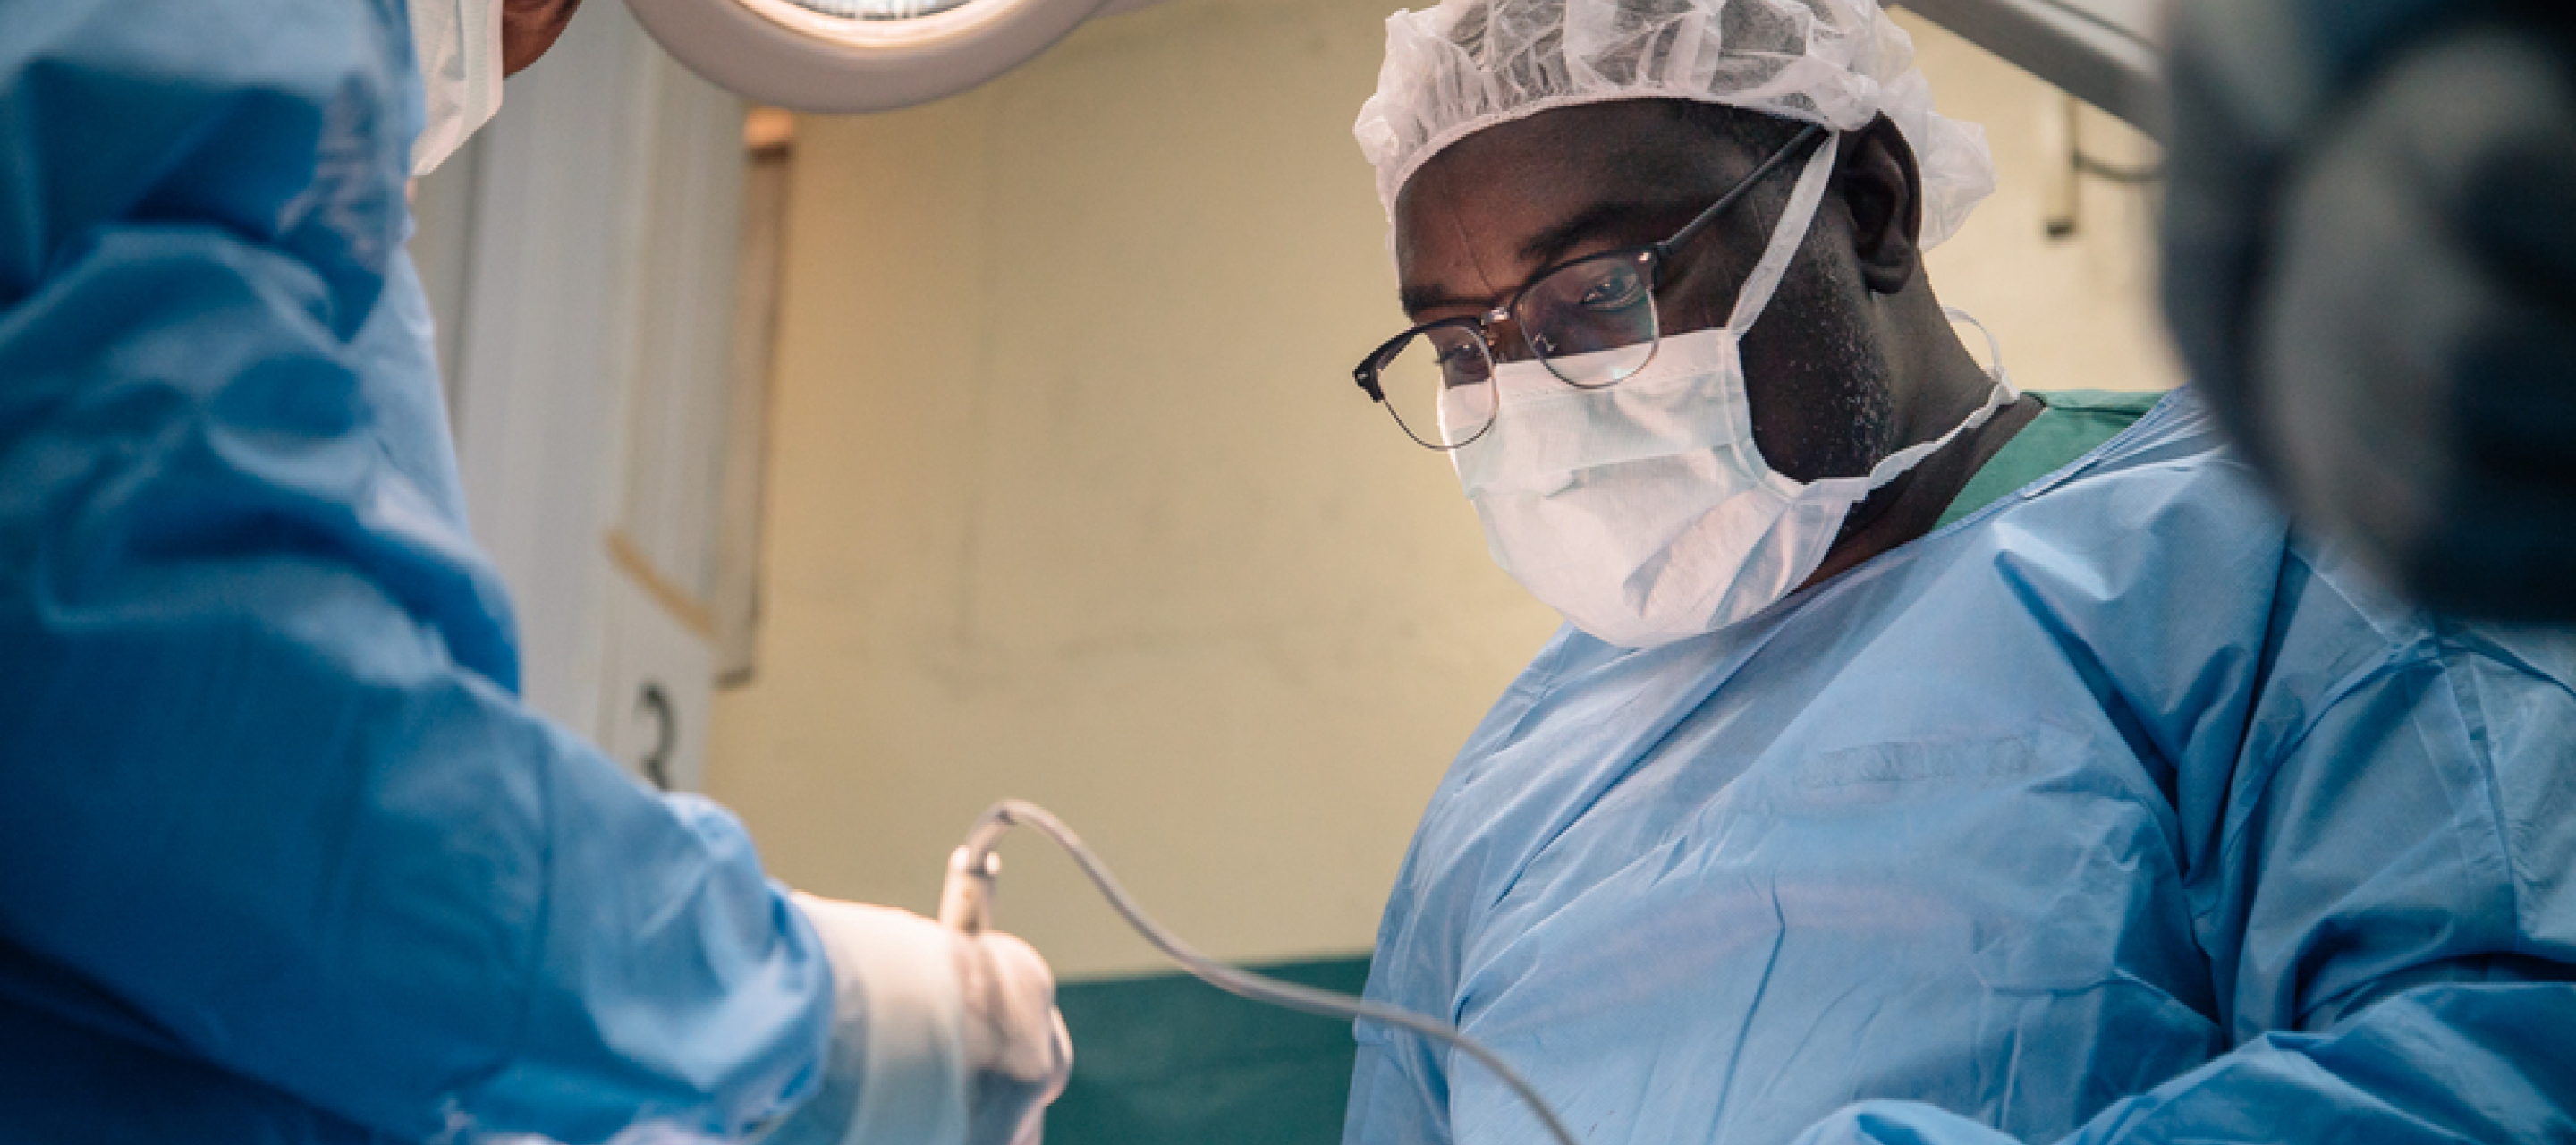 Dr. Abubakar Lawal Abdullahi nimmt eine Operation an einem Noma-Überlebenden vor.